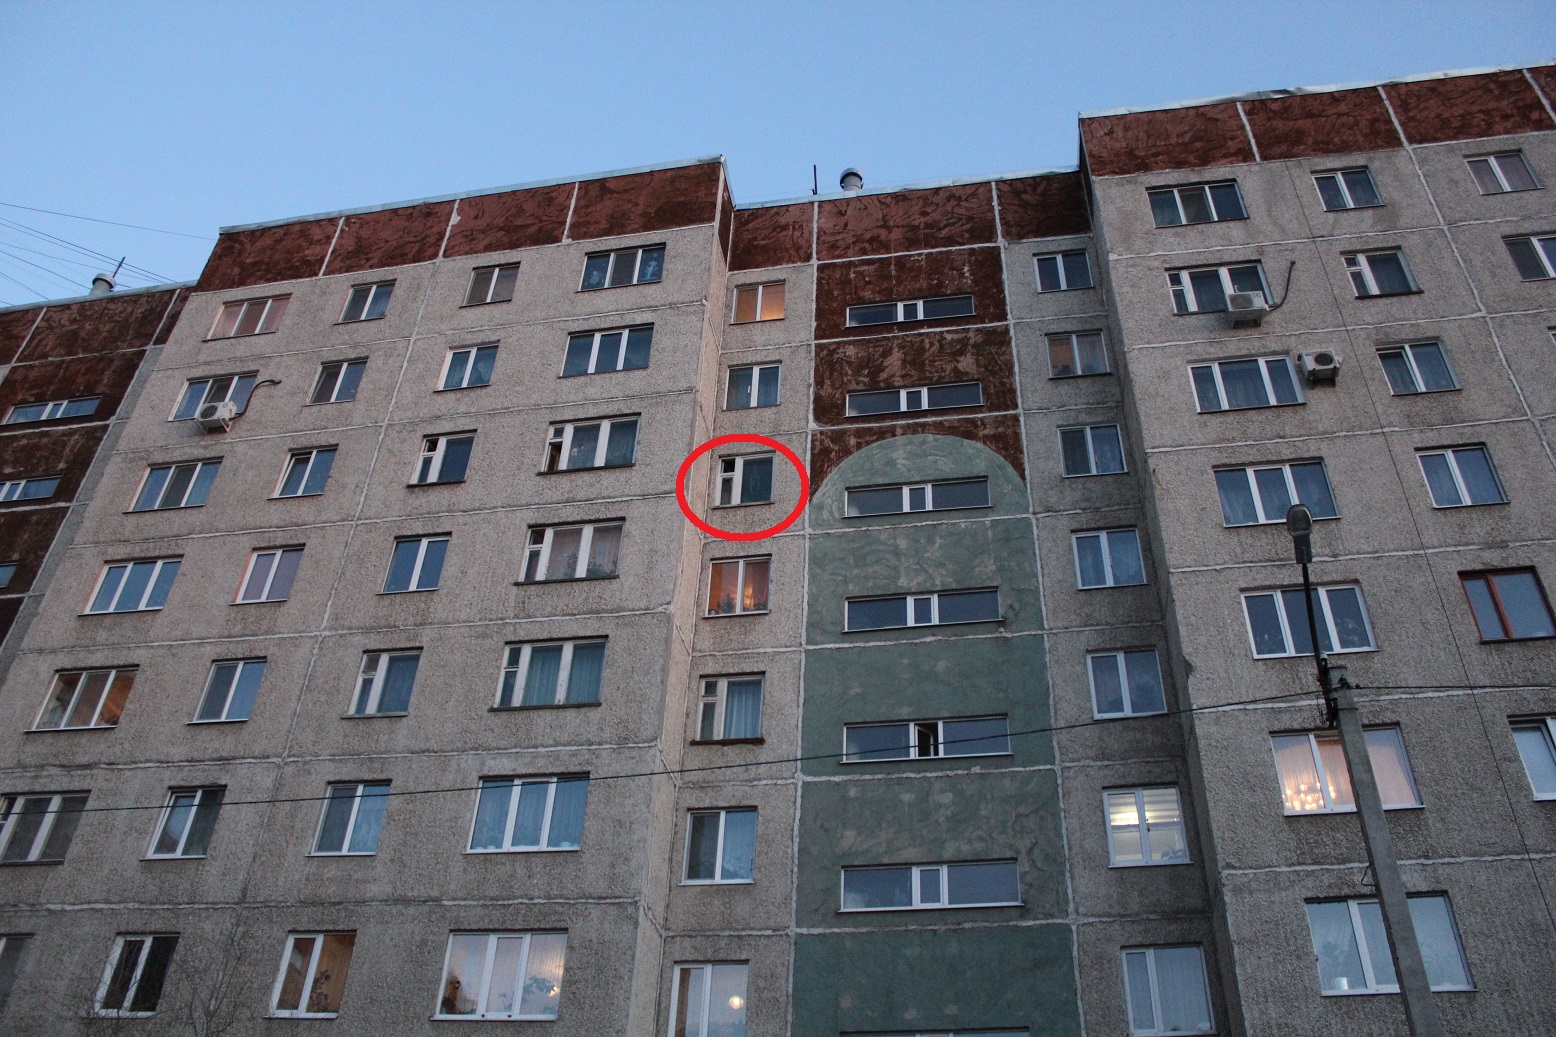 Ооо 8 этаж. Вид с 8 этажа. Вид из окна 8 этажа. Восьмой этаж. Окно 8 этаж.